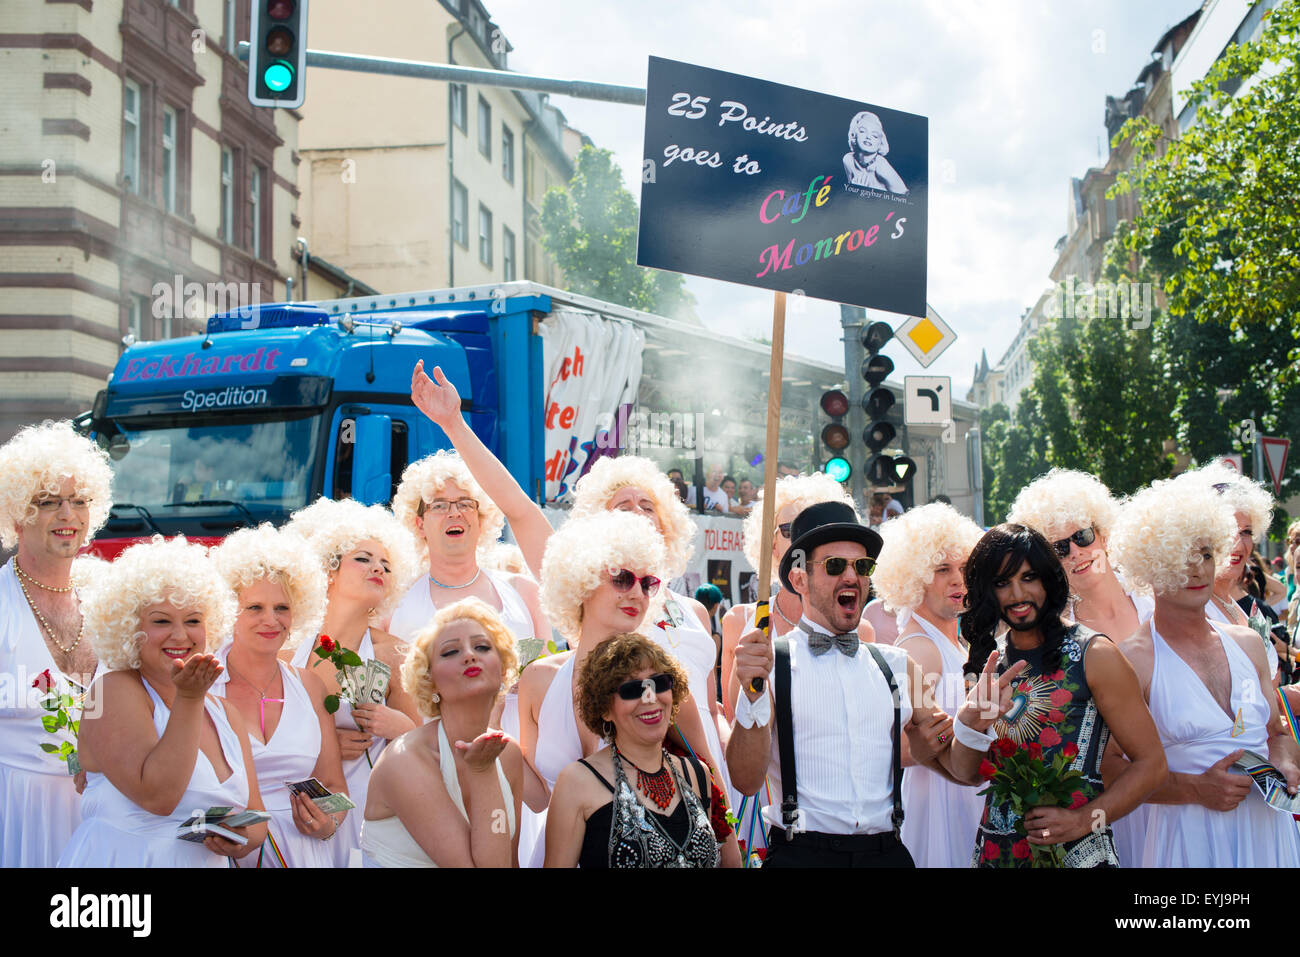 Stuttgart, Deutschland - 25. Juli 2015: Mehrere Männer gekleidet als Marilyn Monroe während der Christopher Street Day 2015 in Stuttgart. T Stockfoto